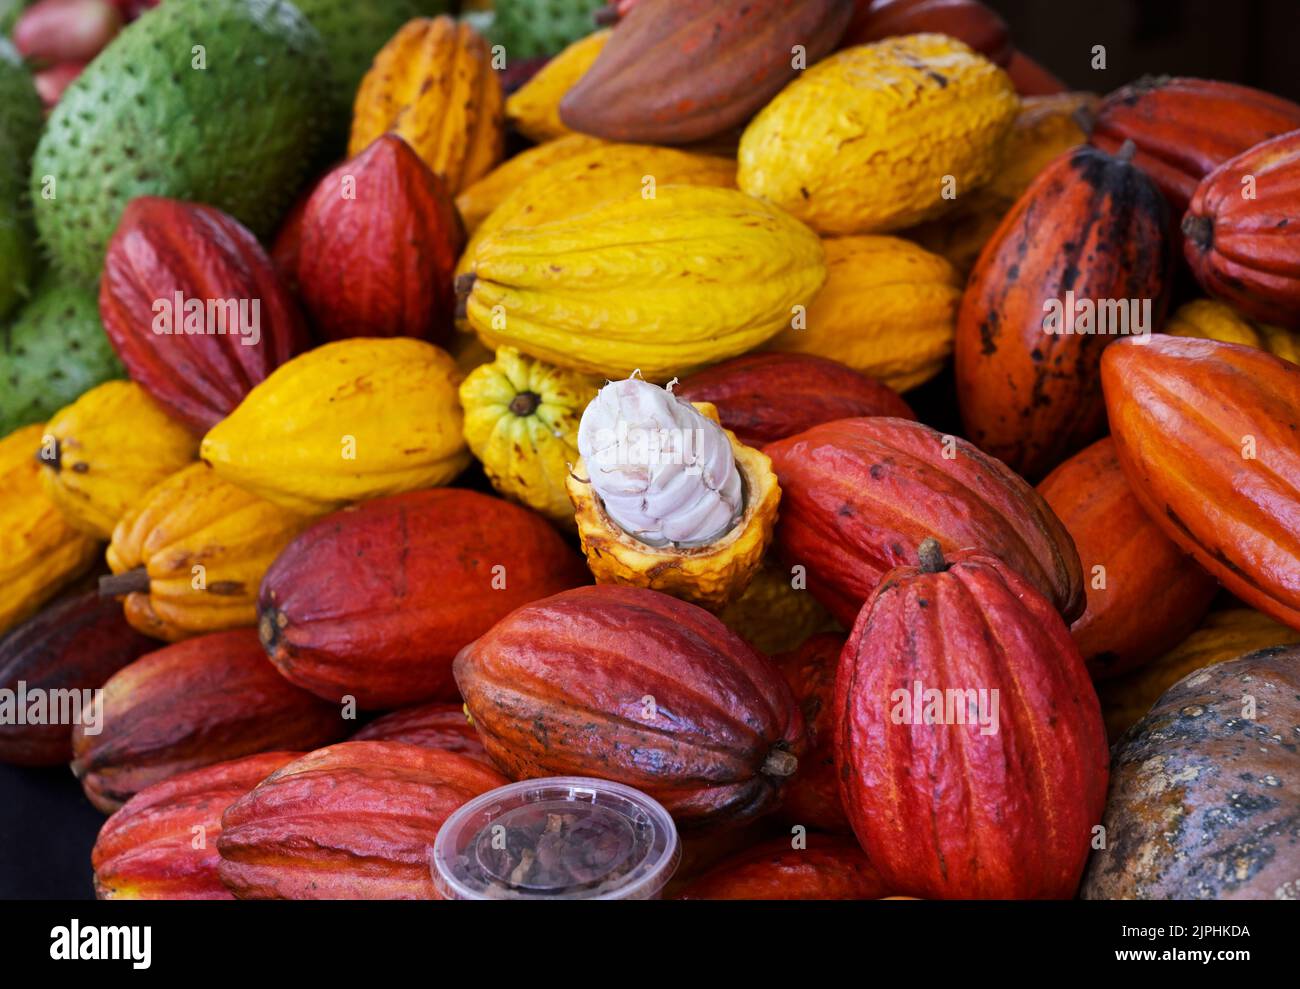 Gousses de cacao, une ouverte montrant les graines, Hawaï Banque D'Images